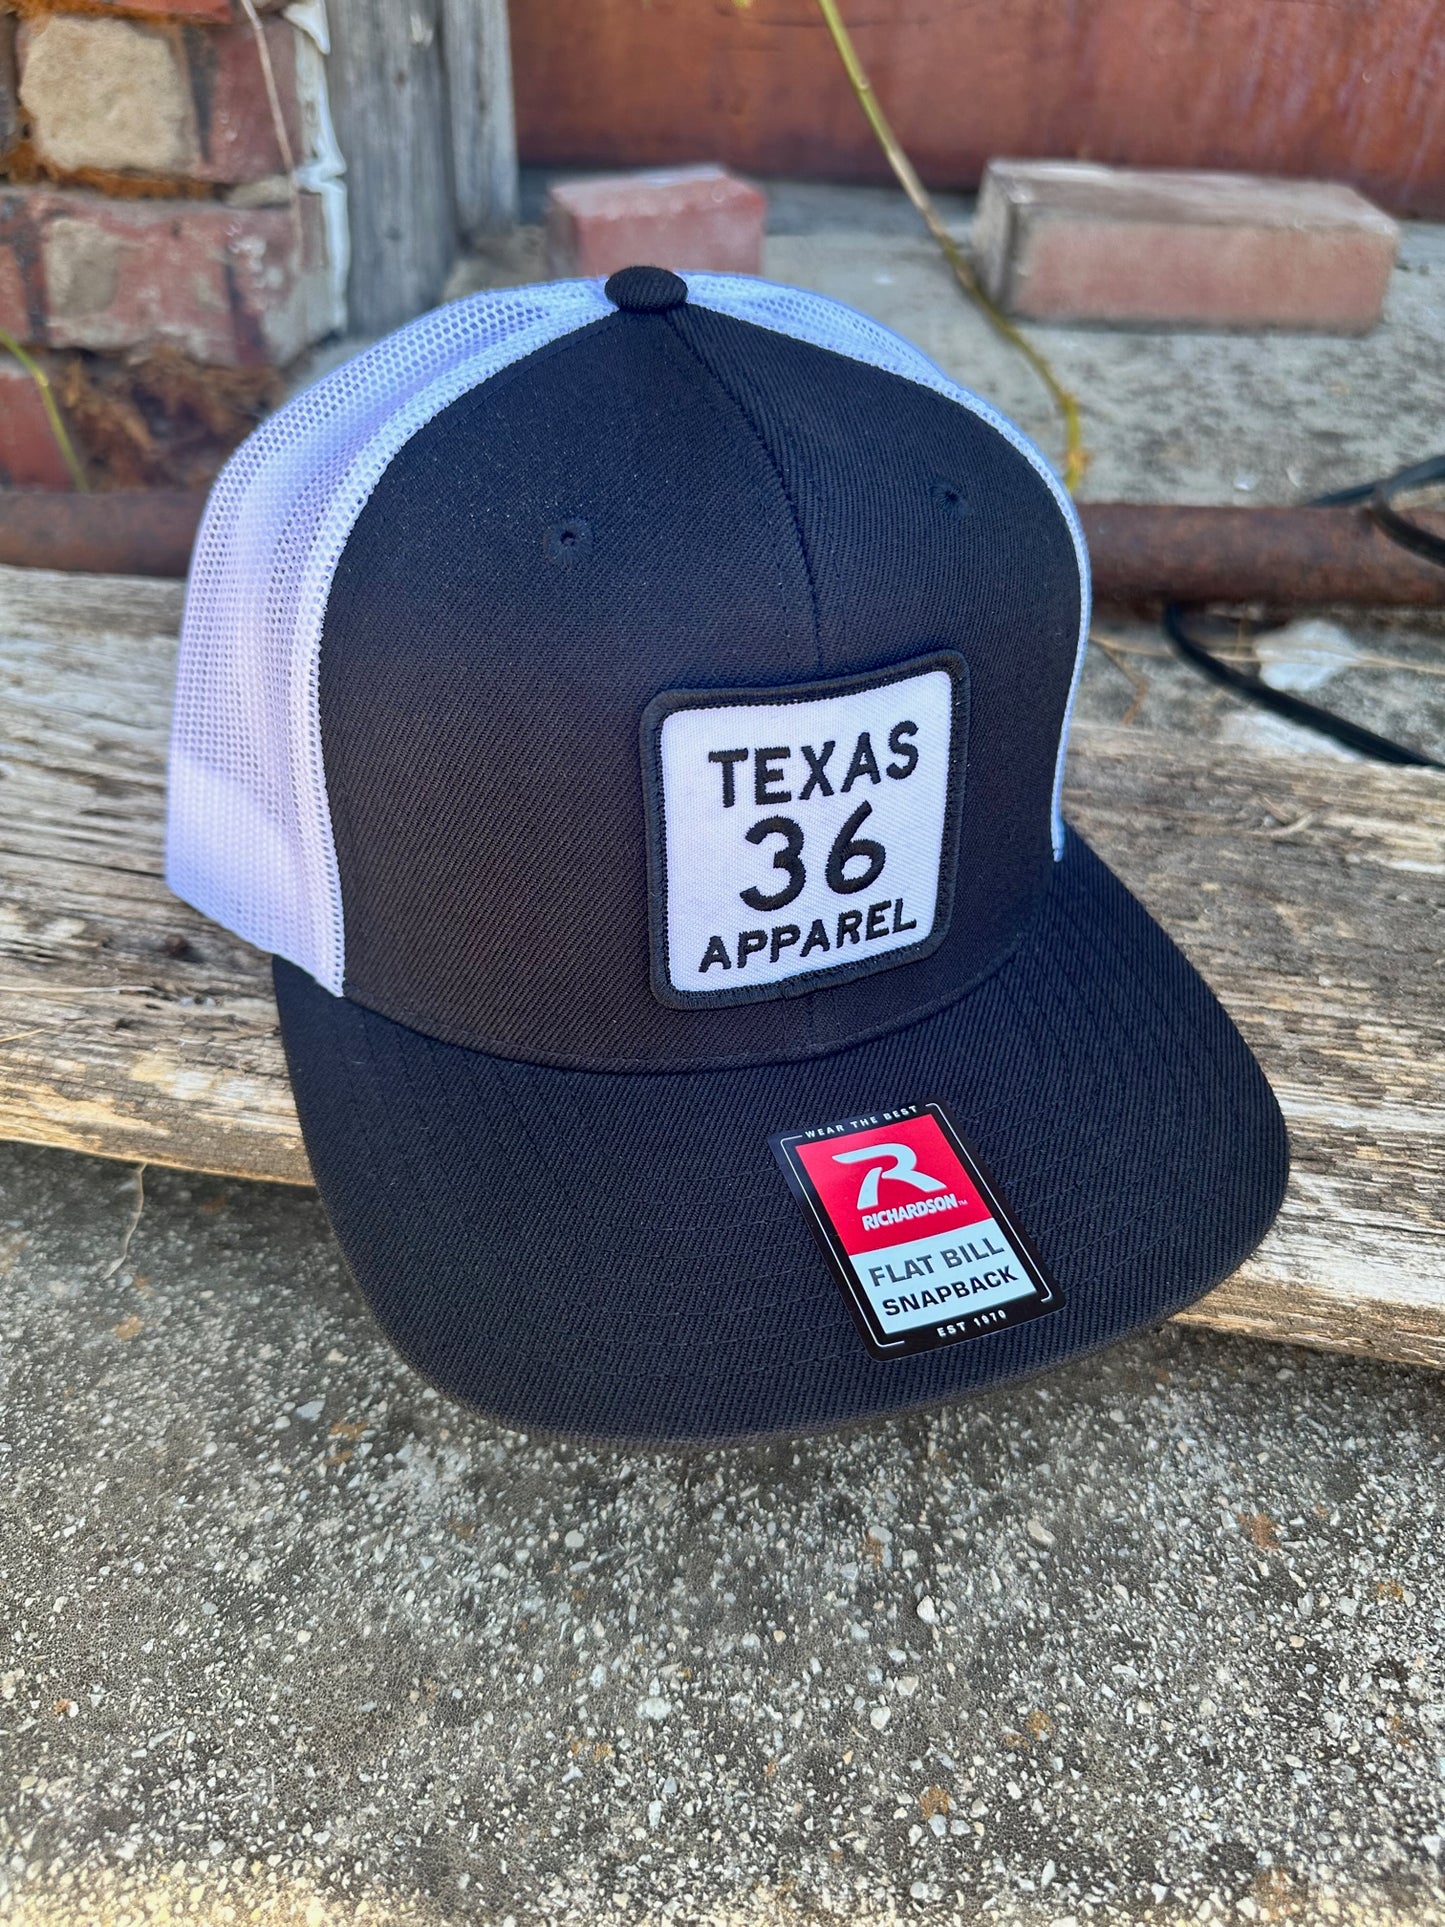 Texas 36 Apparel Caps